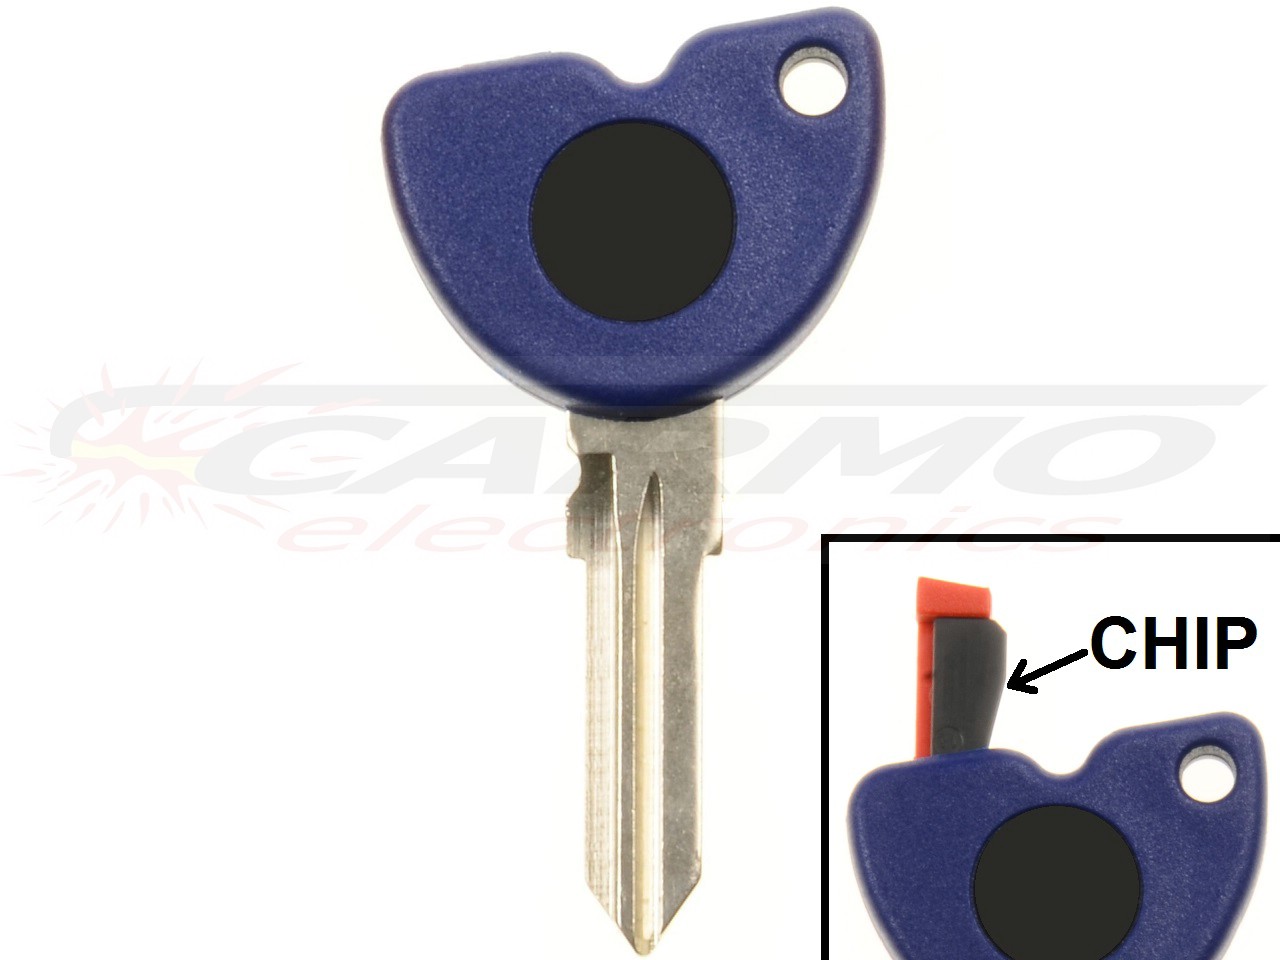 Piaggio Vespa Gilera chip key + chip (PIA-1B004020, PIA-573960) - Click Image to Close